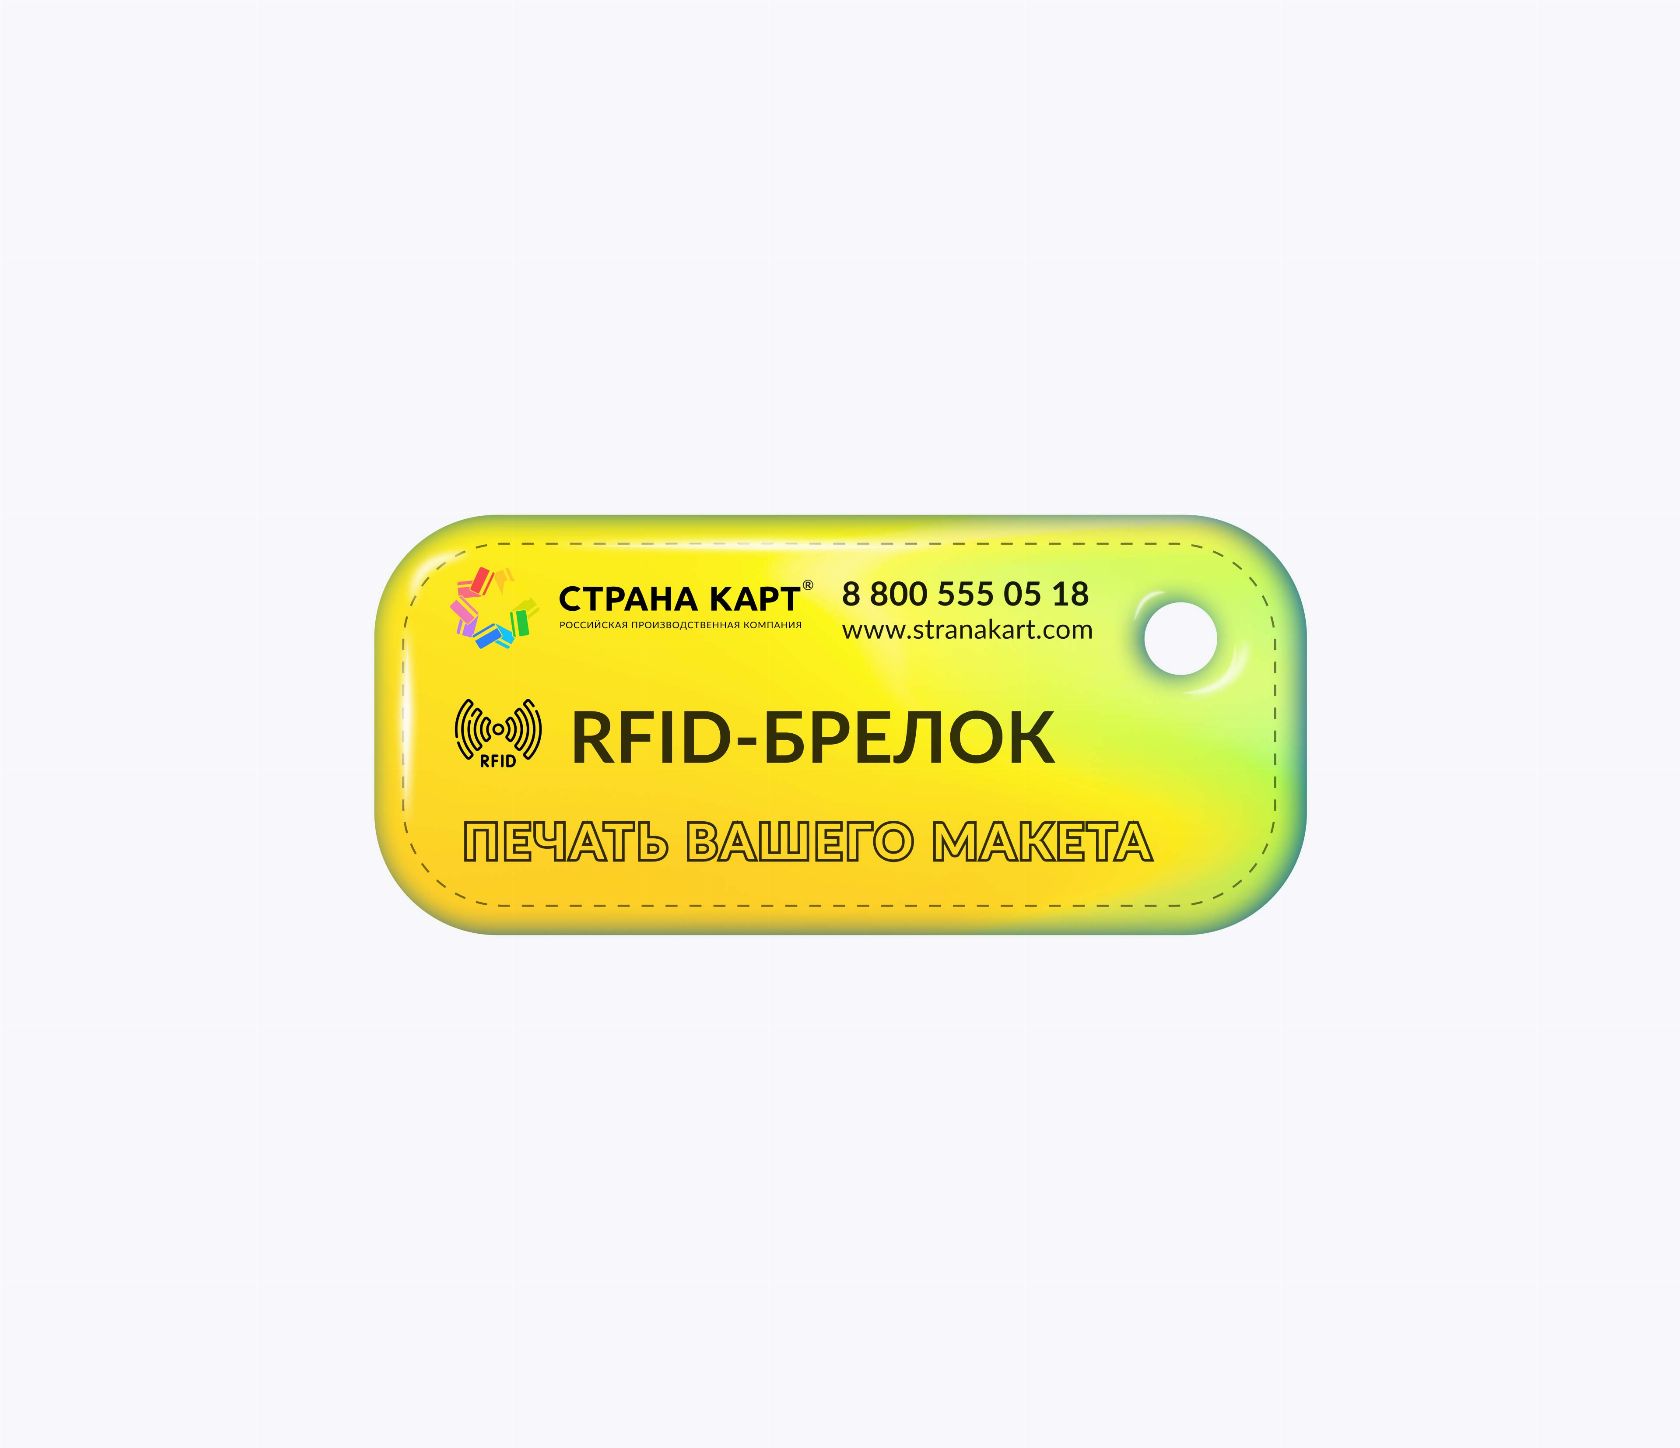 Прямоугольные мини RFID-брелоки NEOKEY® с чипом SMARTTAG® 4k 4 byte nUID RFID-брелоки NEOKEY® с чипом SMARTTAG® 4k 4 byte nUID и вашим логотипом